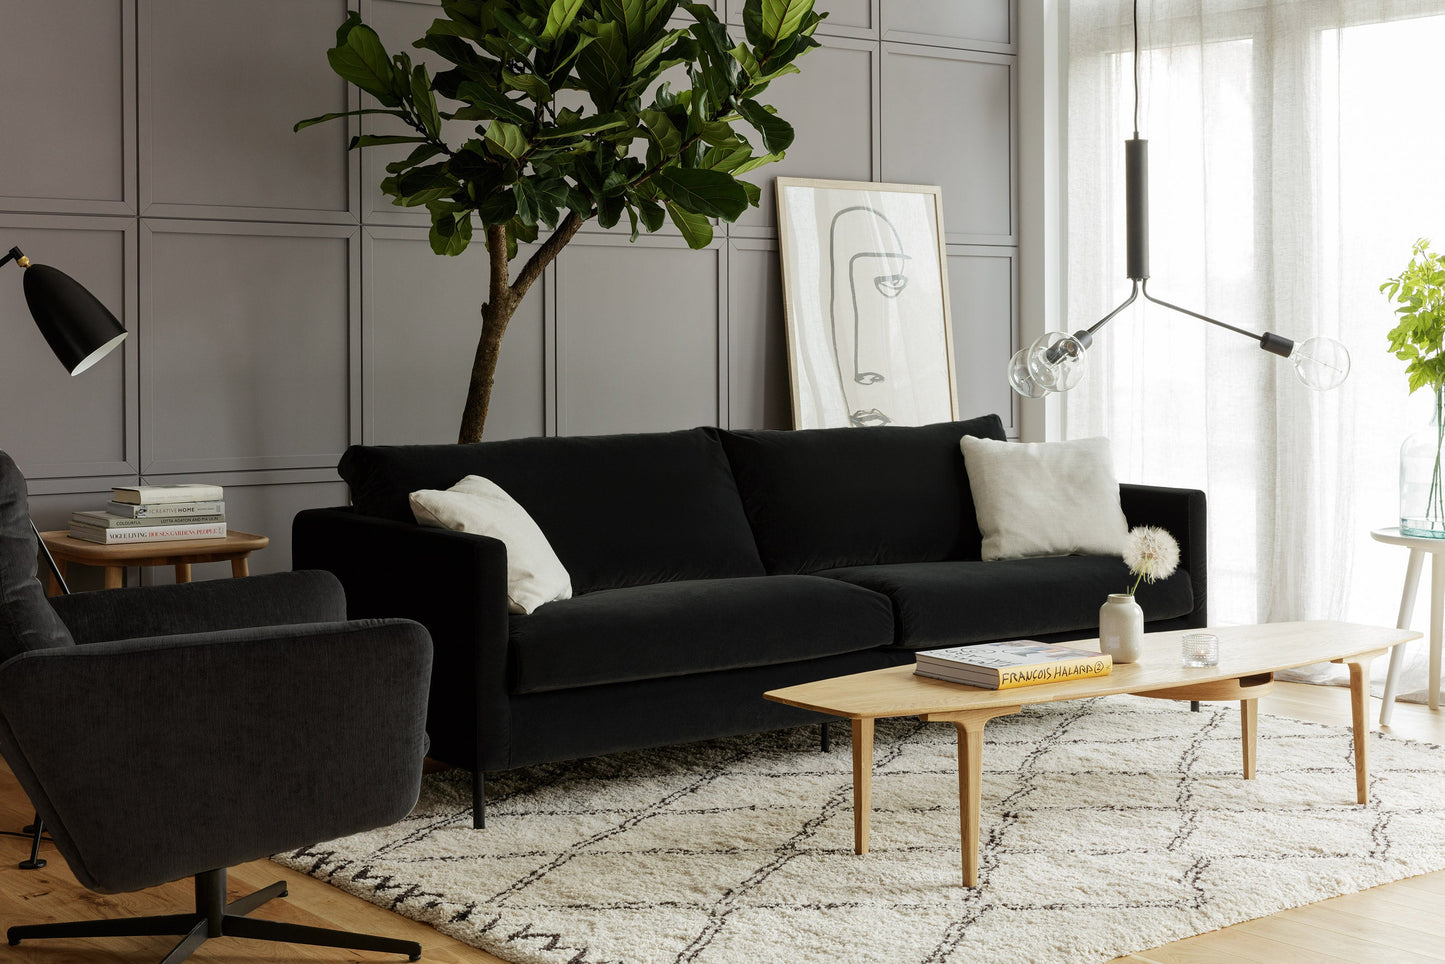 Impulse 4-seter sofa Classic Velvet Antracite, en del av kategorien 4-seter - At Home Interiør